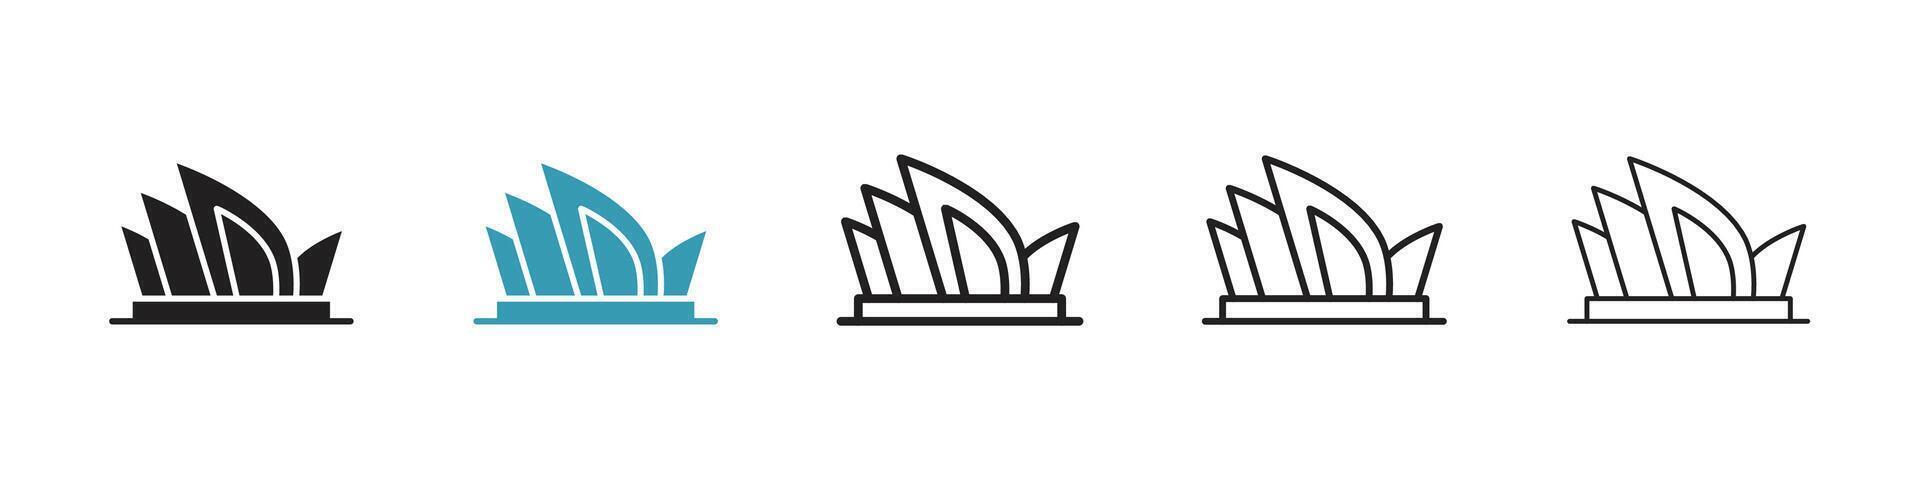 Symbol des Opernhauses von Sydney vektor